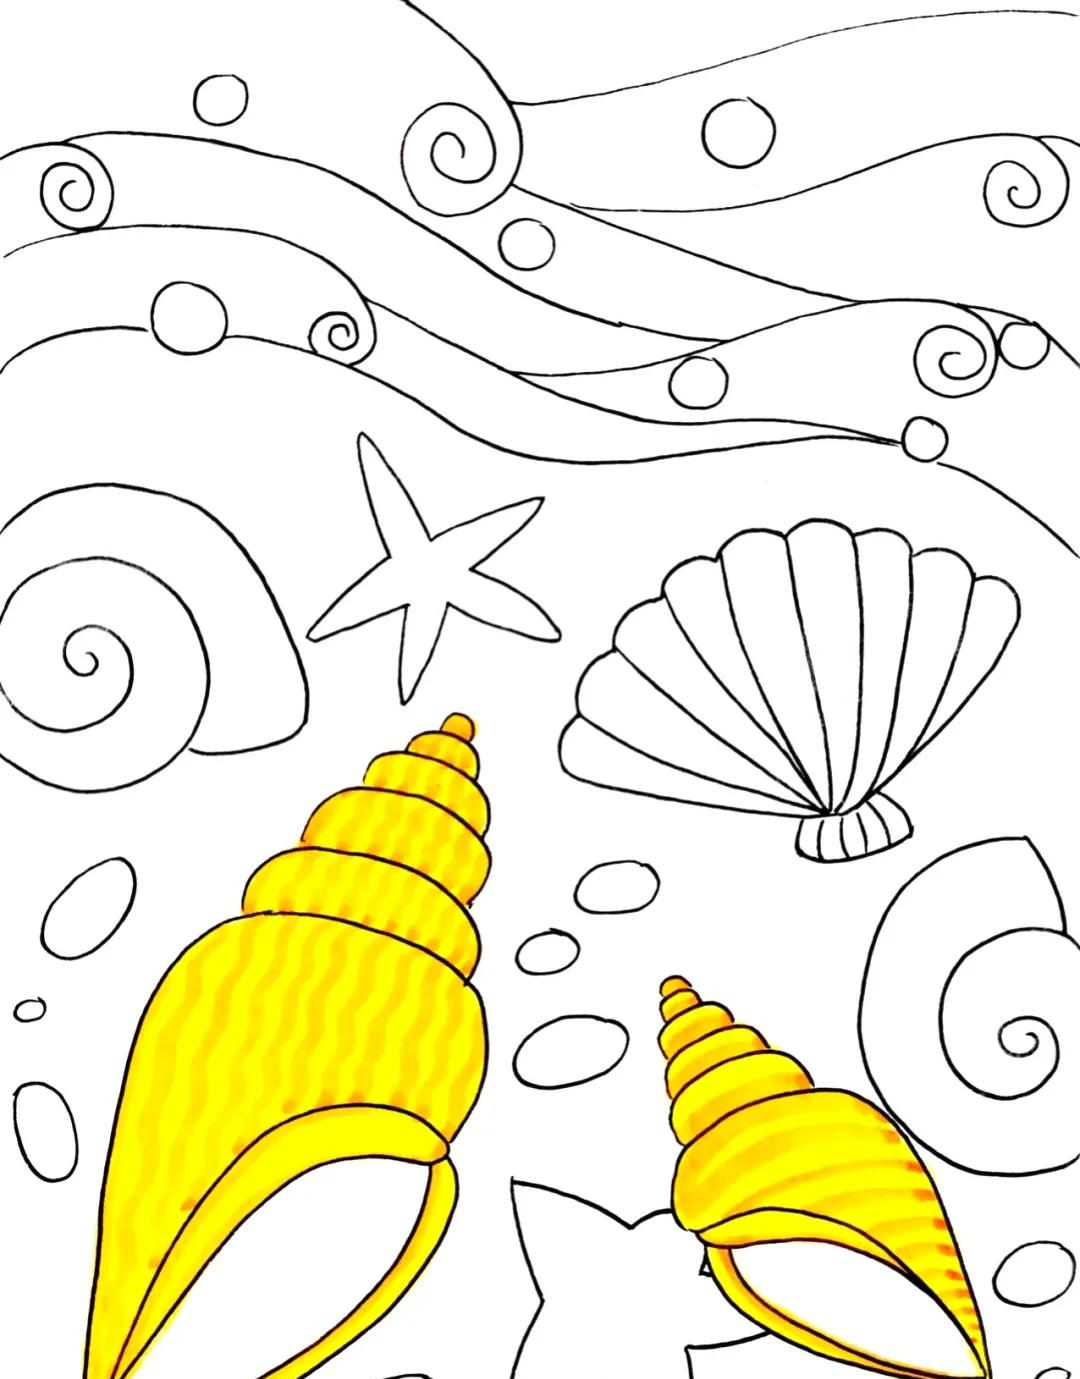 4,完成海螺,贝壳,海星,小石头的上色, 并用临近色进行装饰